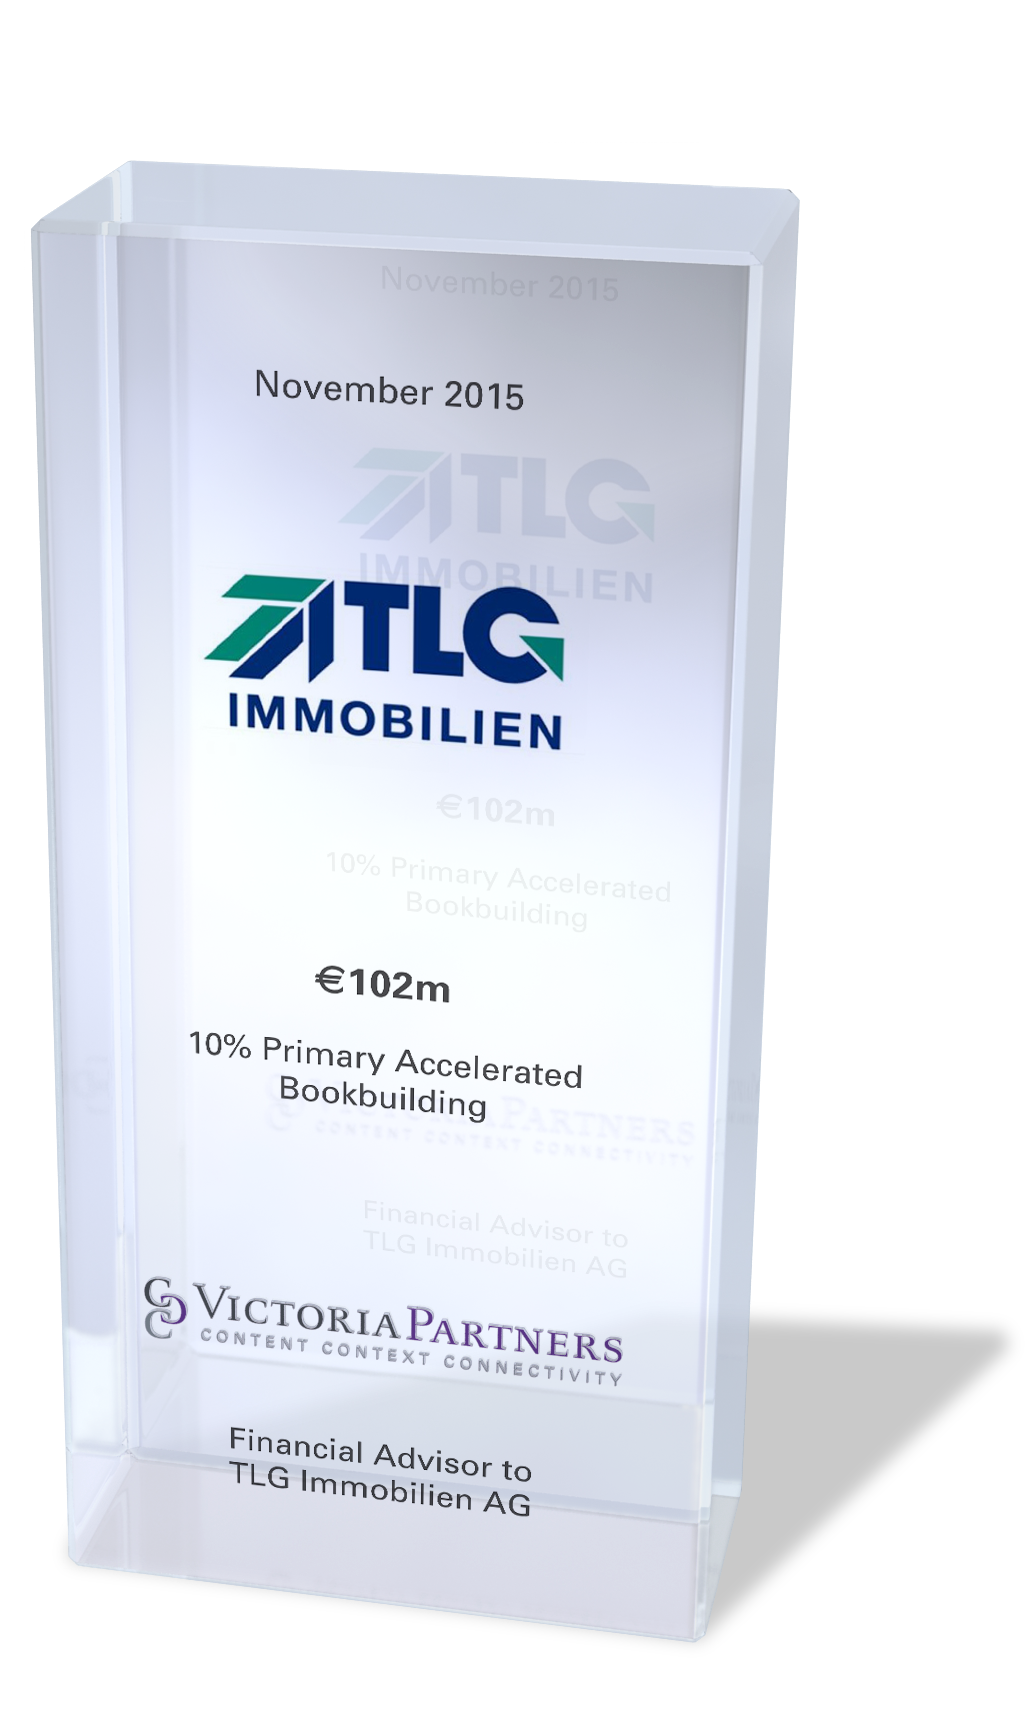 VICTORIAPARTNERS - Financial Advisor to TLG Immobilien AG - November 2015